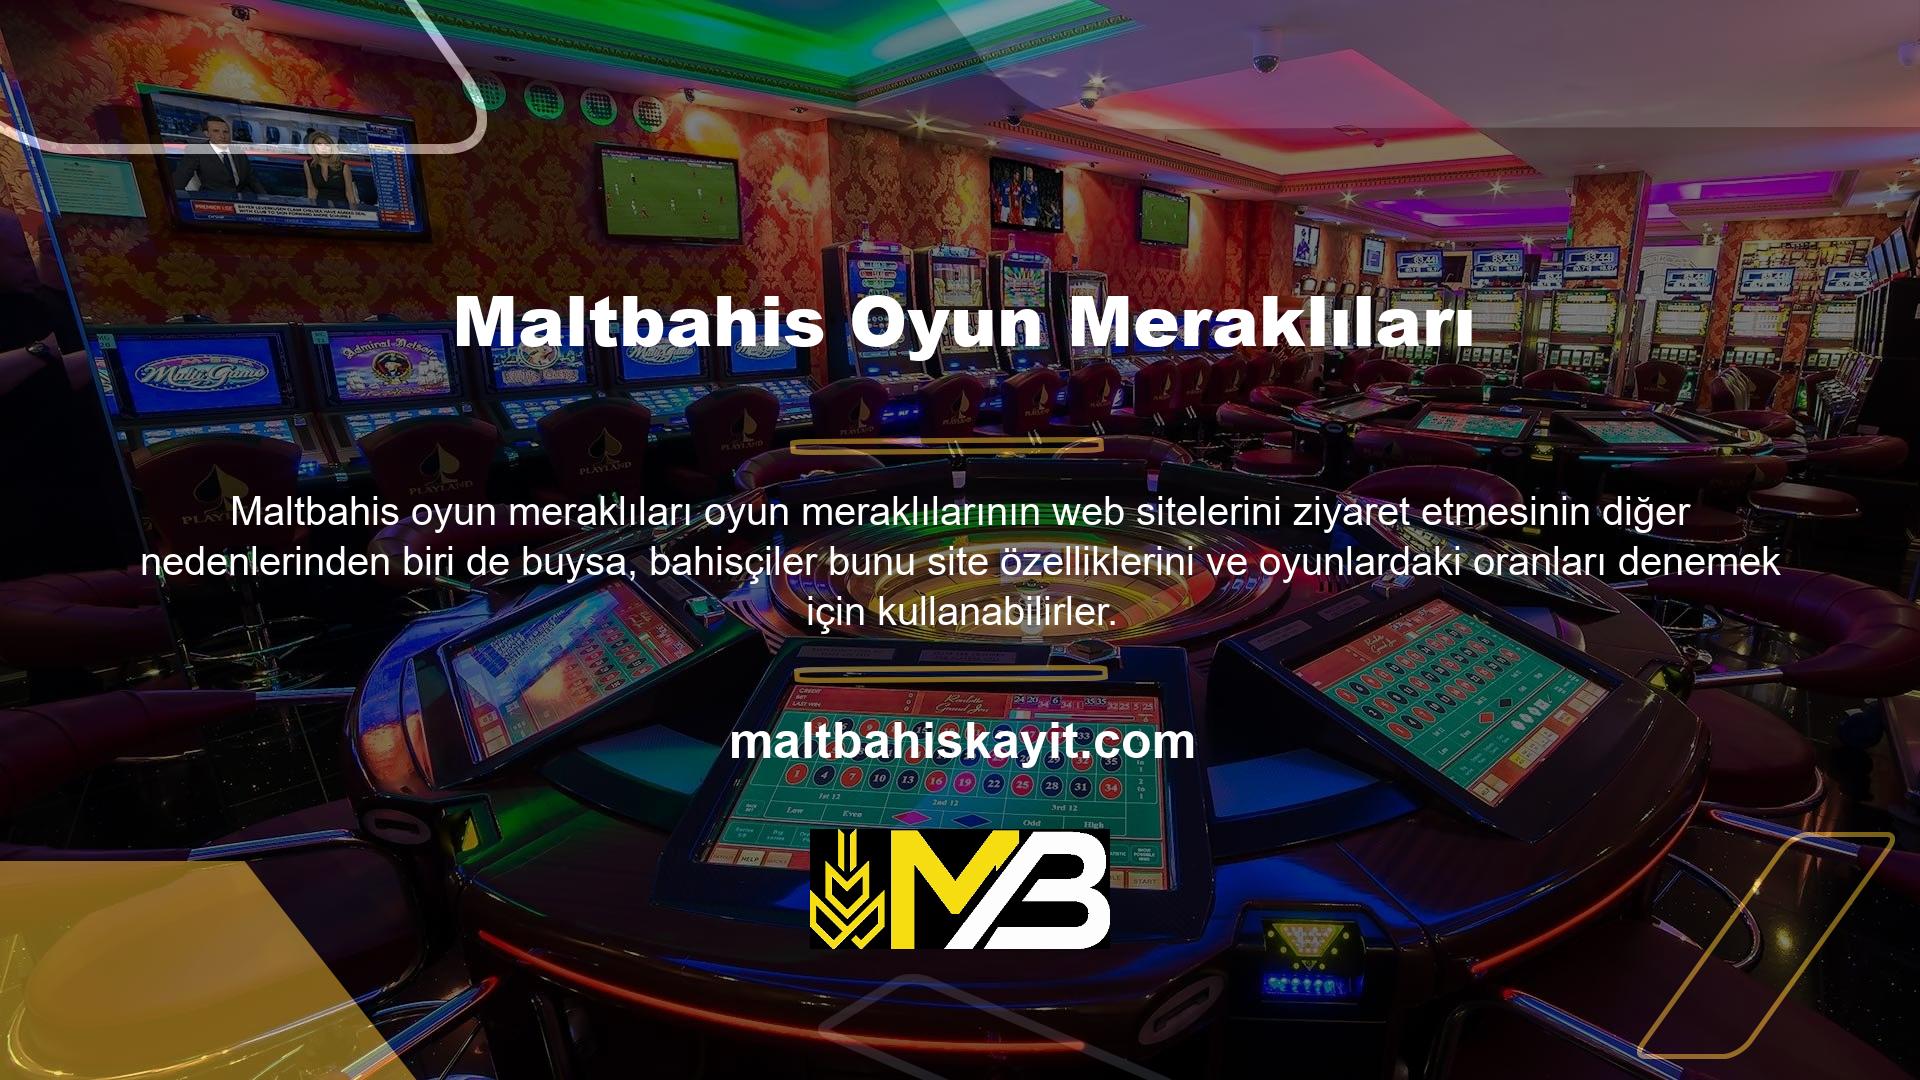 Genel olarak Maltbahis, web sitesinde para kazanan kullanıcılardan para çekmeyi gerektirir